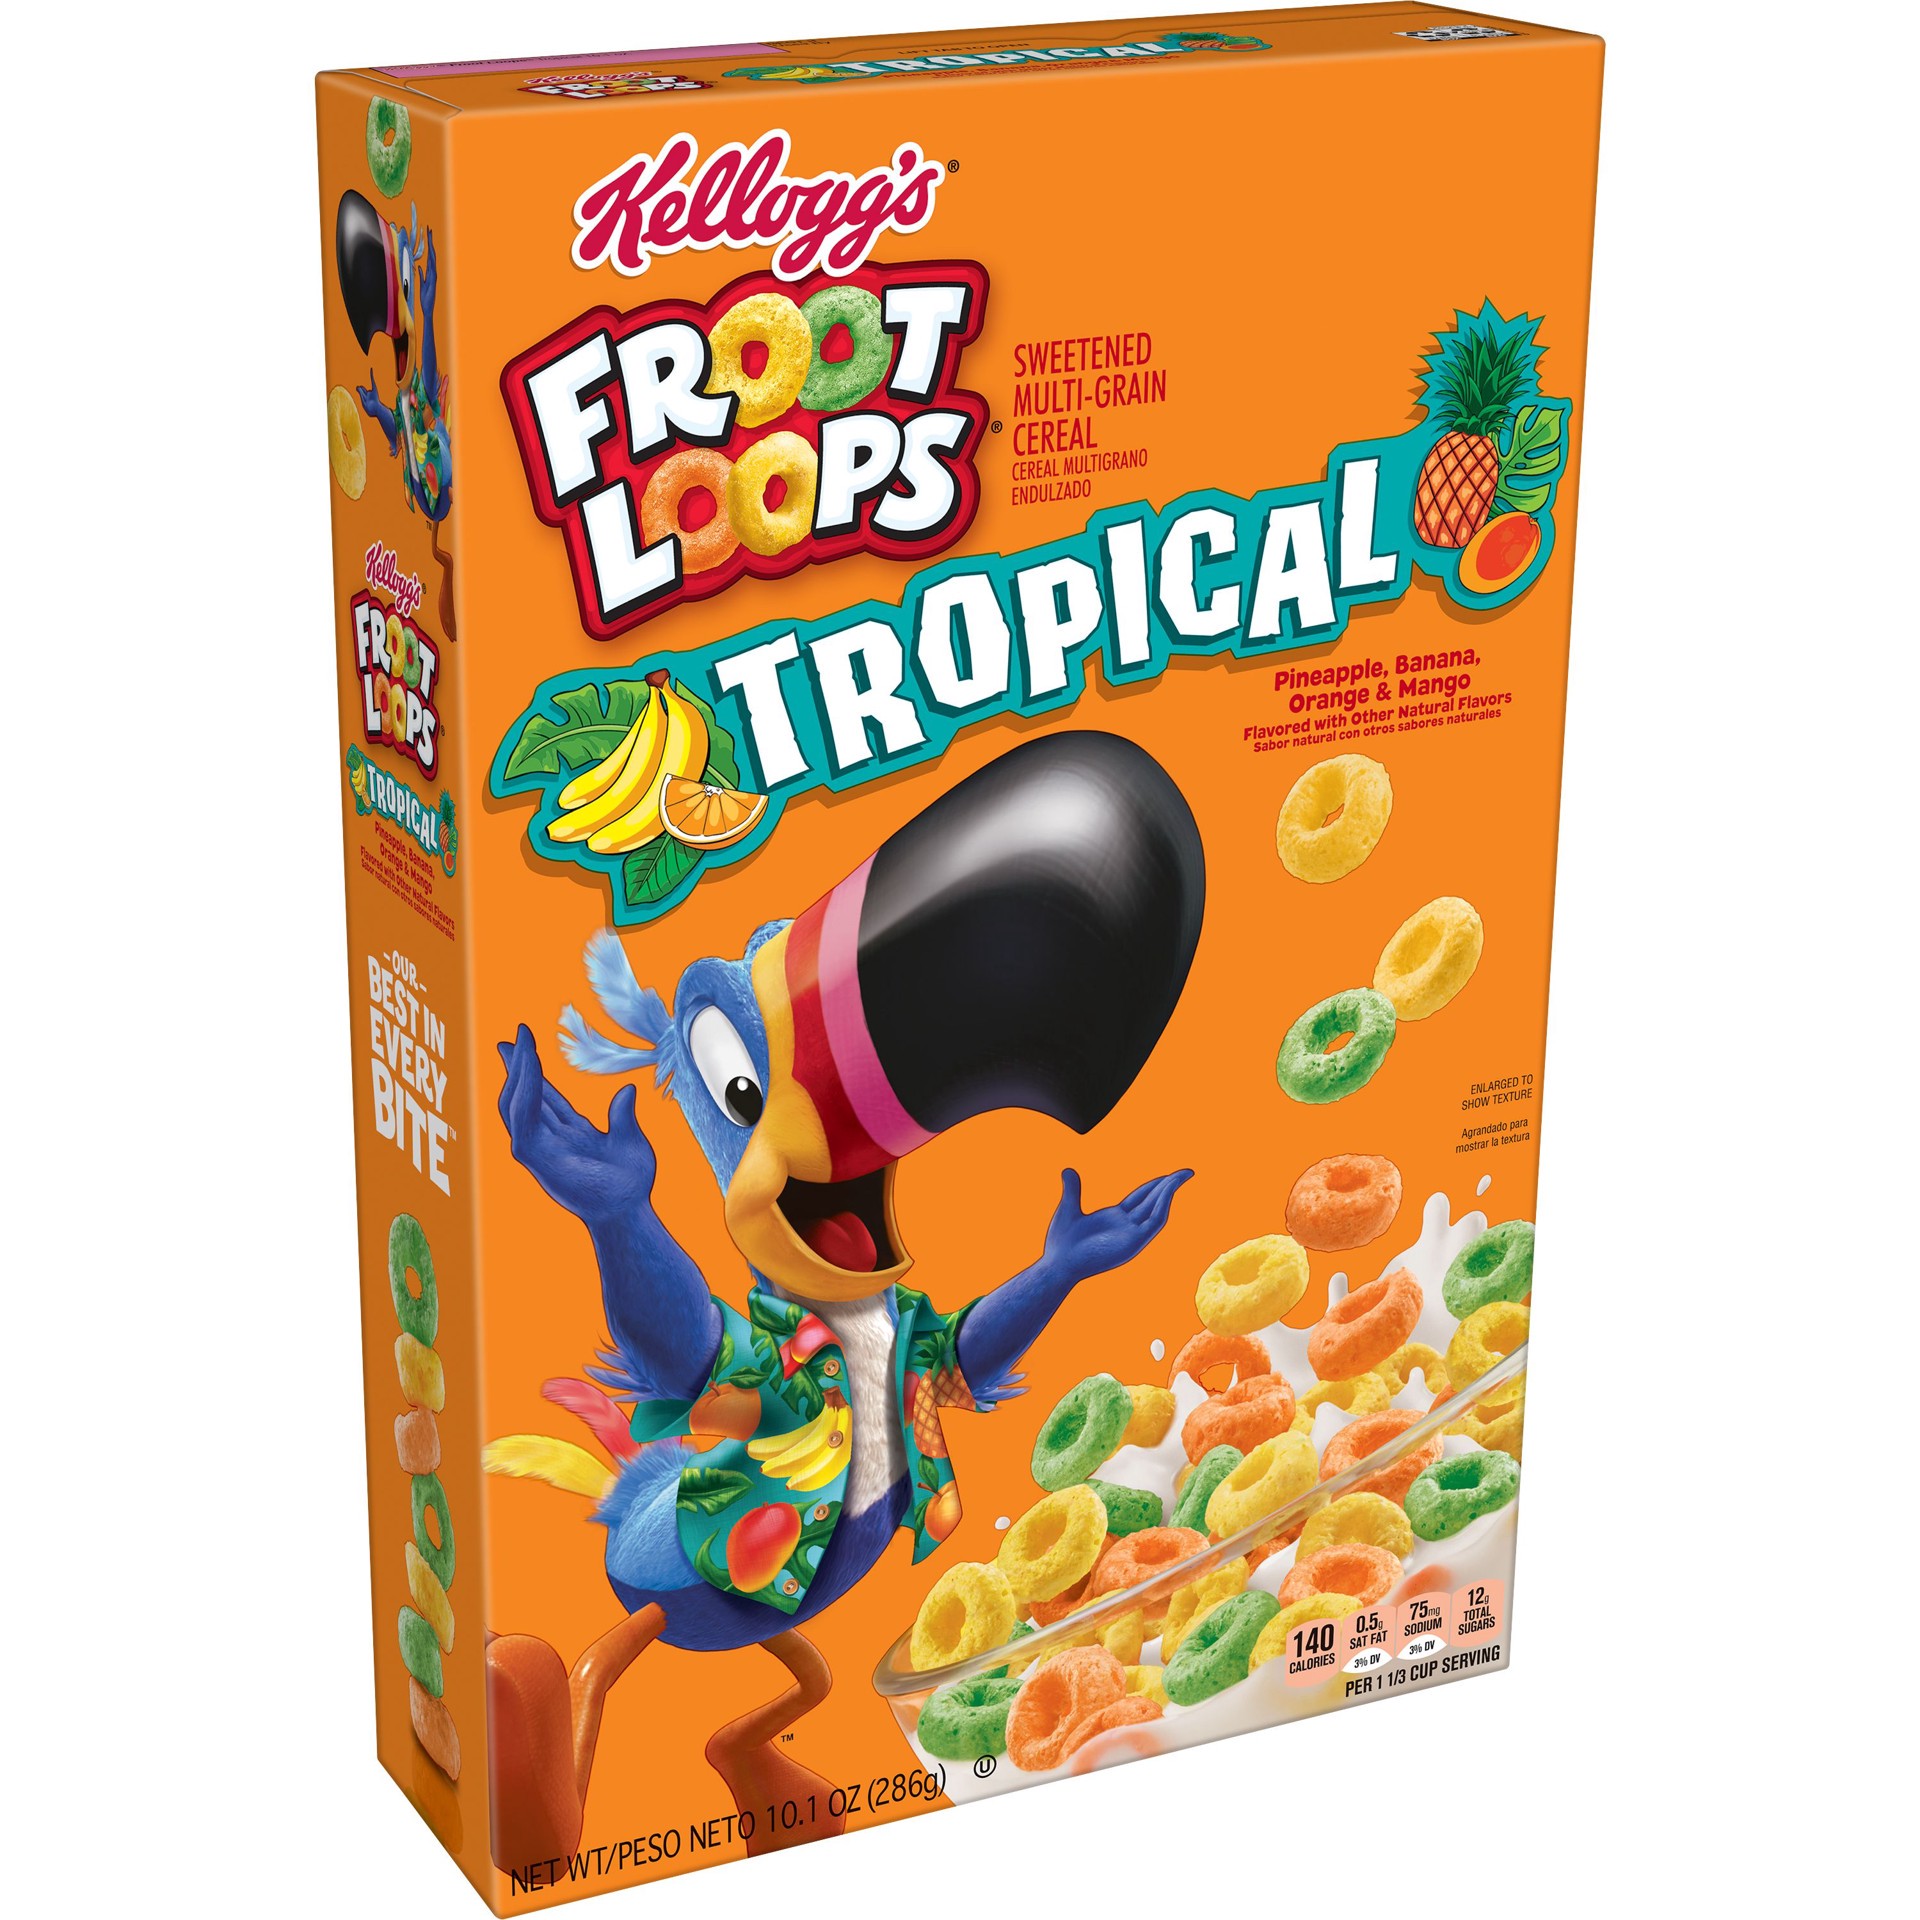 Kellogg's Froot Loops Cereal 10.1oz Box